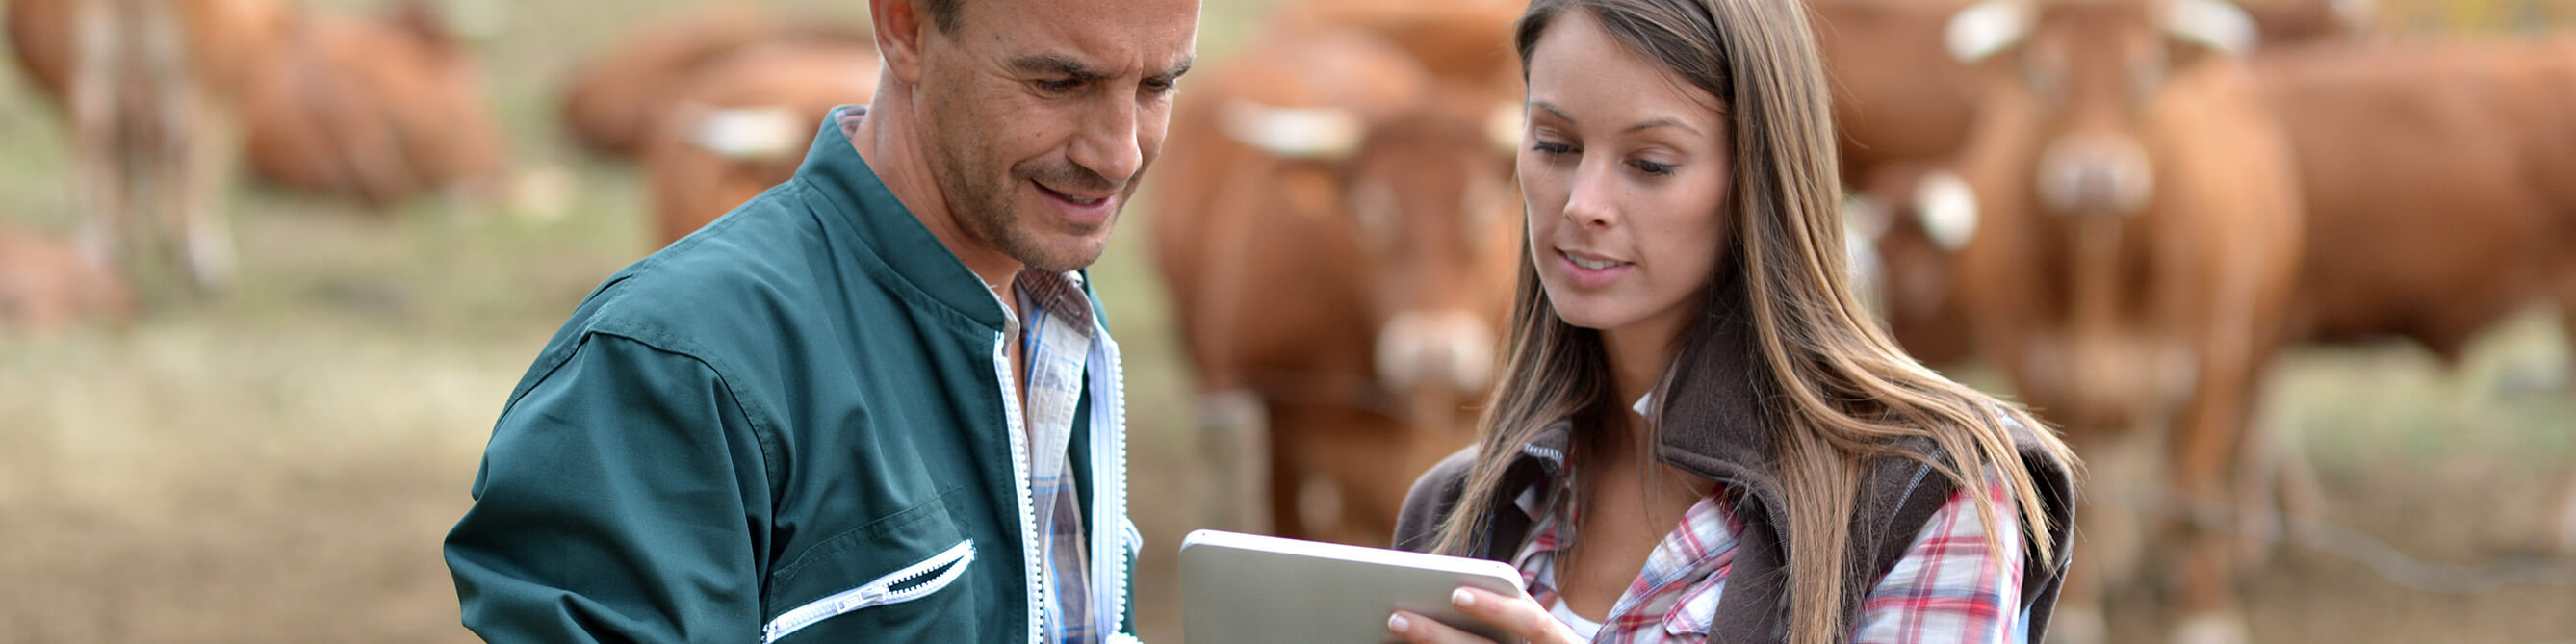 Ein junger Man nund eine junge Frau stehen auf einer Wiese, im Hintergrund sind braune Kühe zu sehen, beide schauen auf einen Tablet-PC.